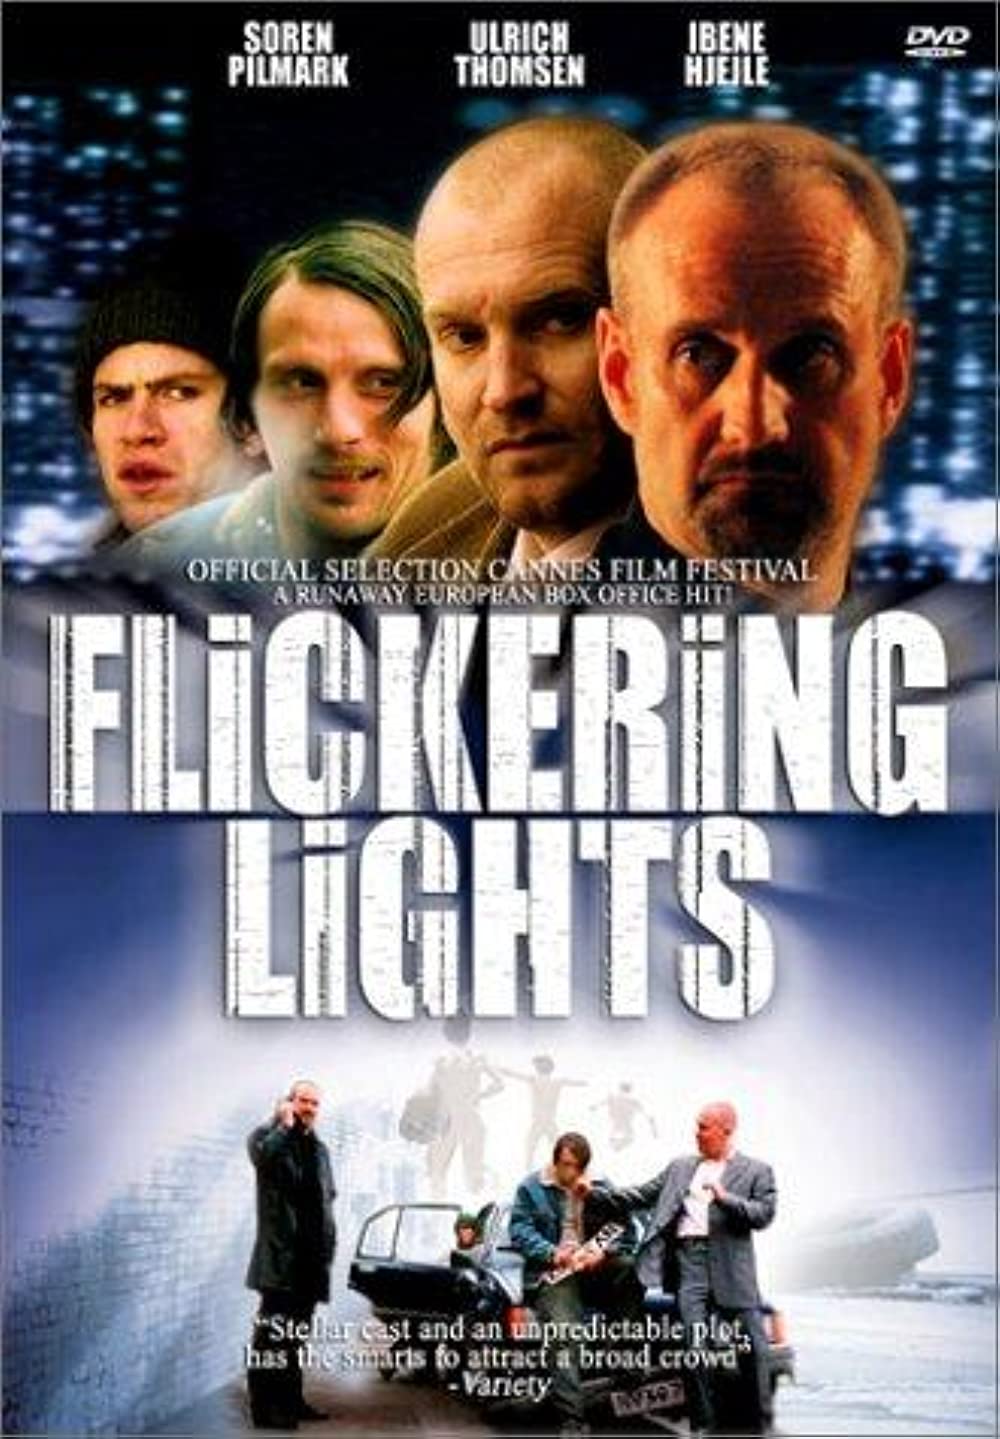 Filmbeschreibung zu Flickering Lights (OV)